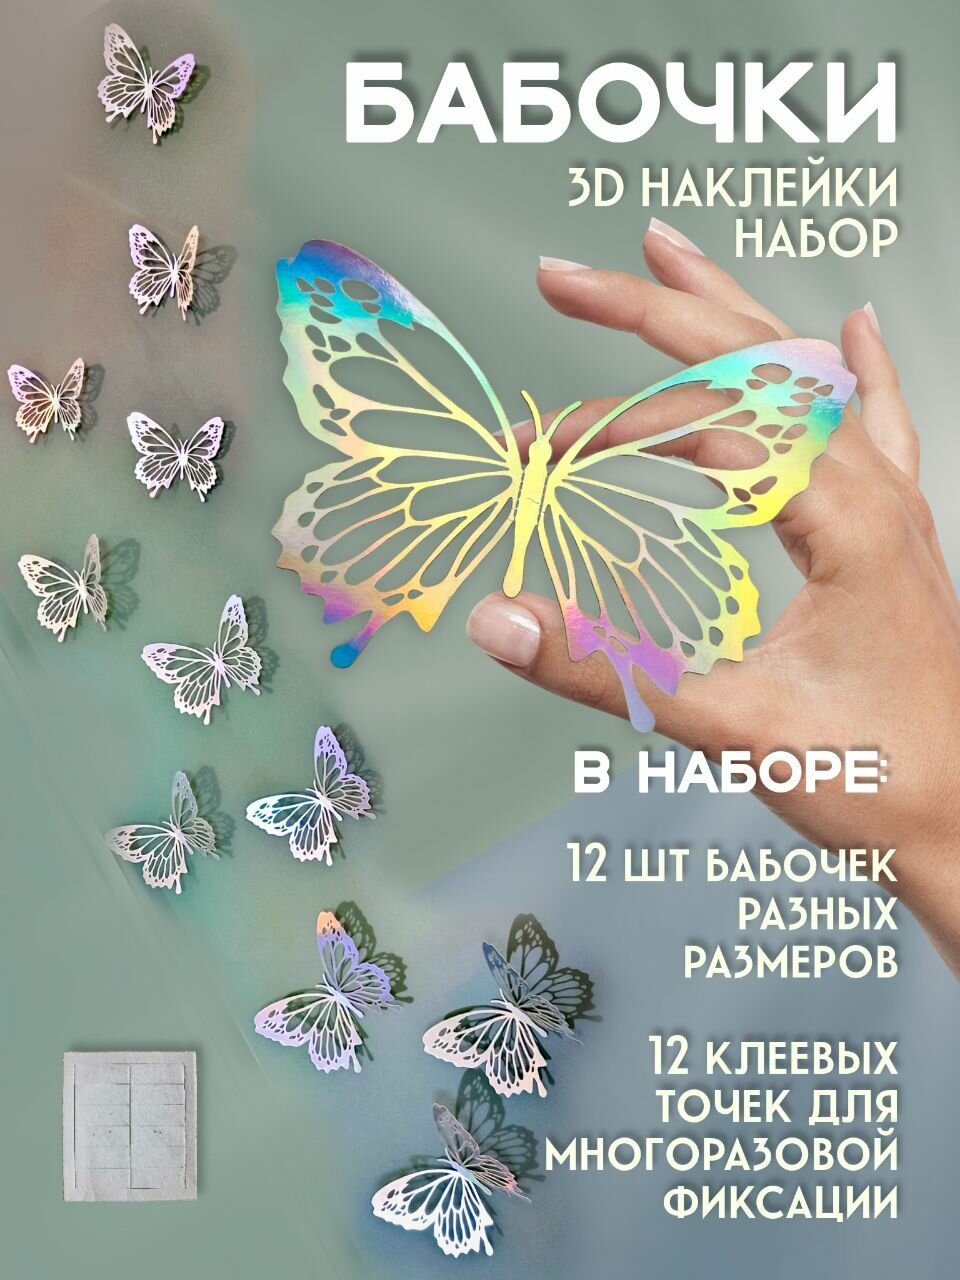 Декоративные интерьерные наклейки 3d Бабочки на стену декор для дома интерьера бабочки 3Д